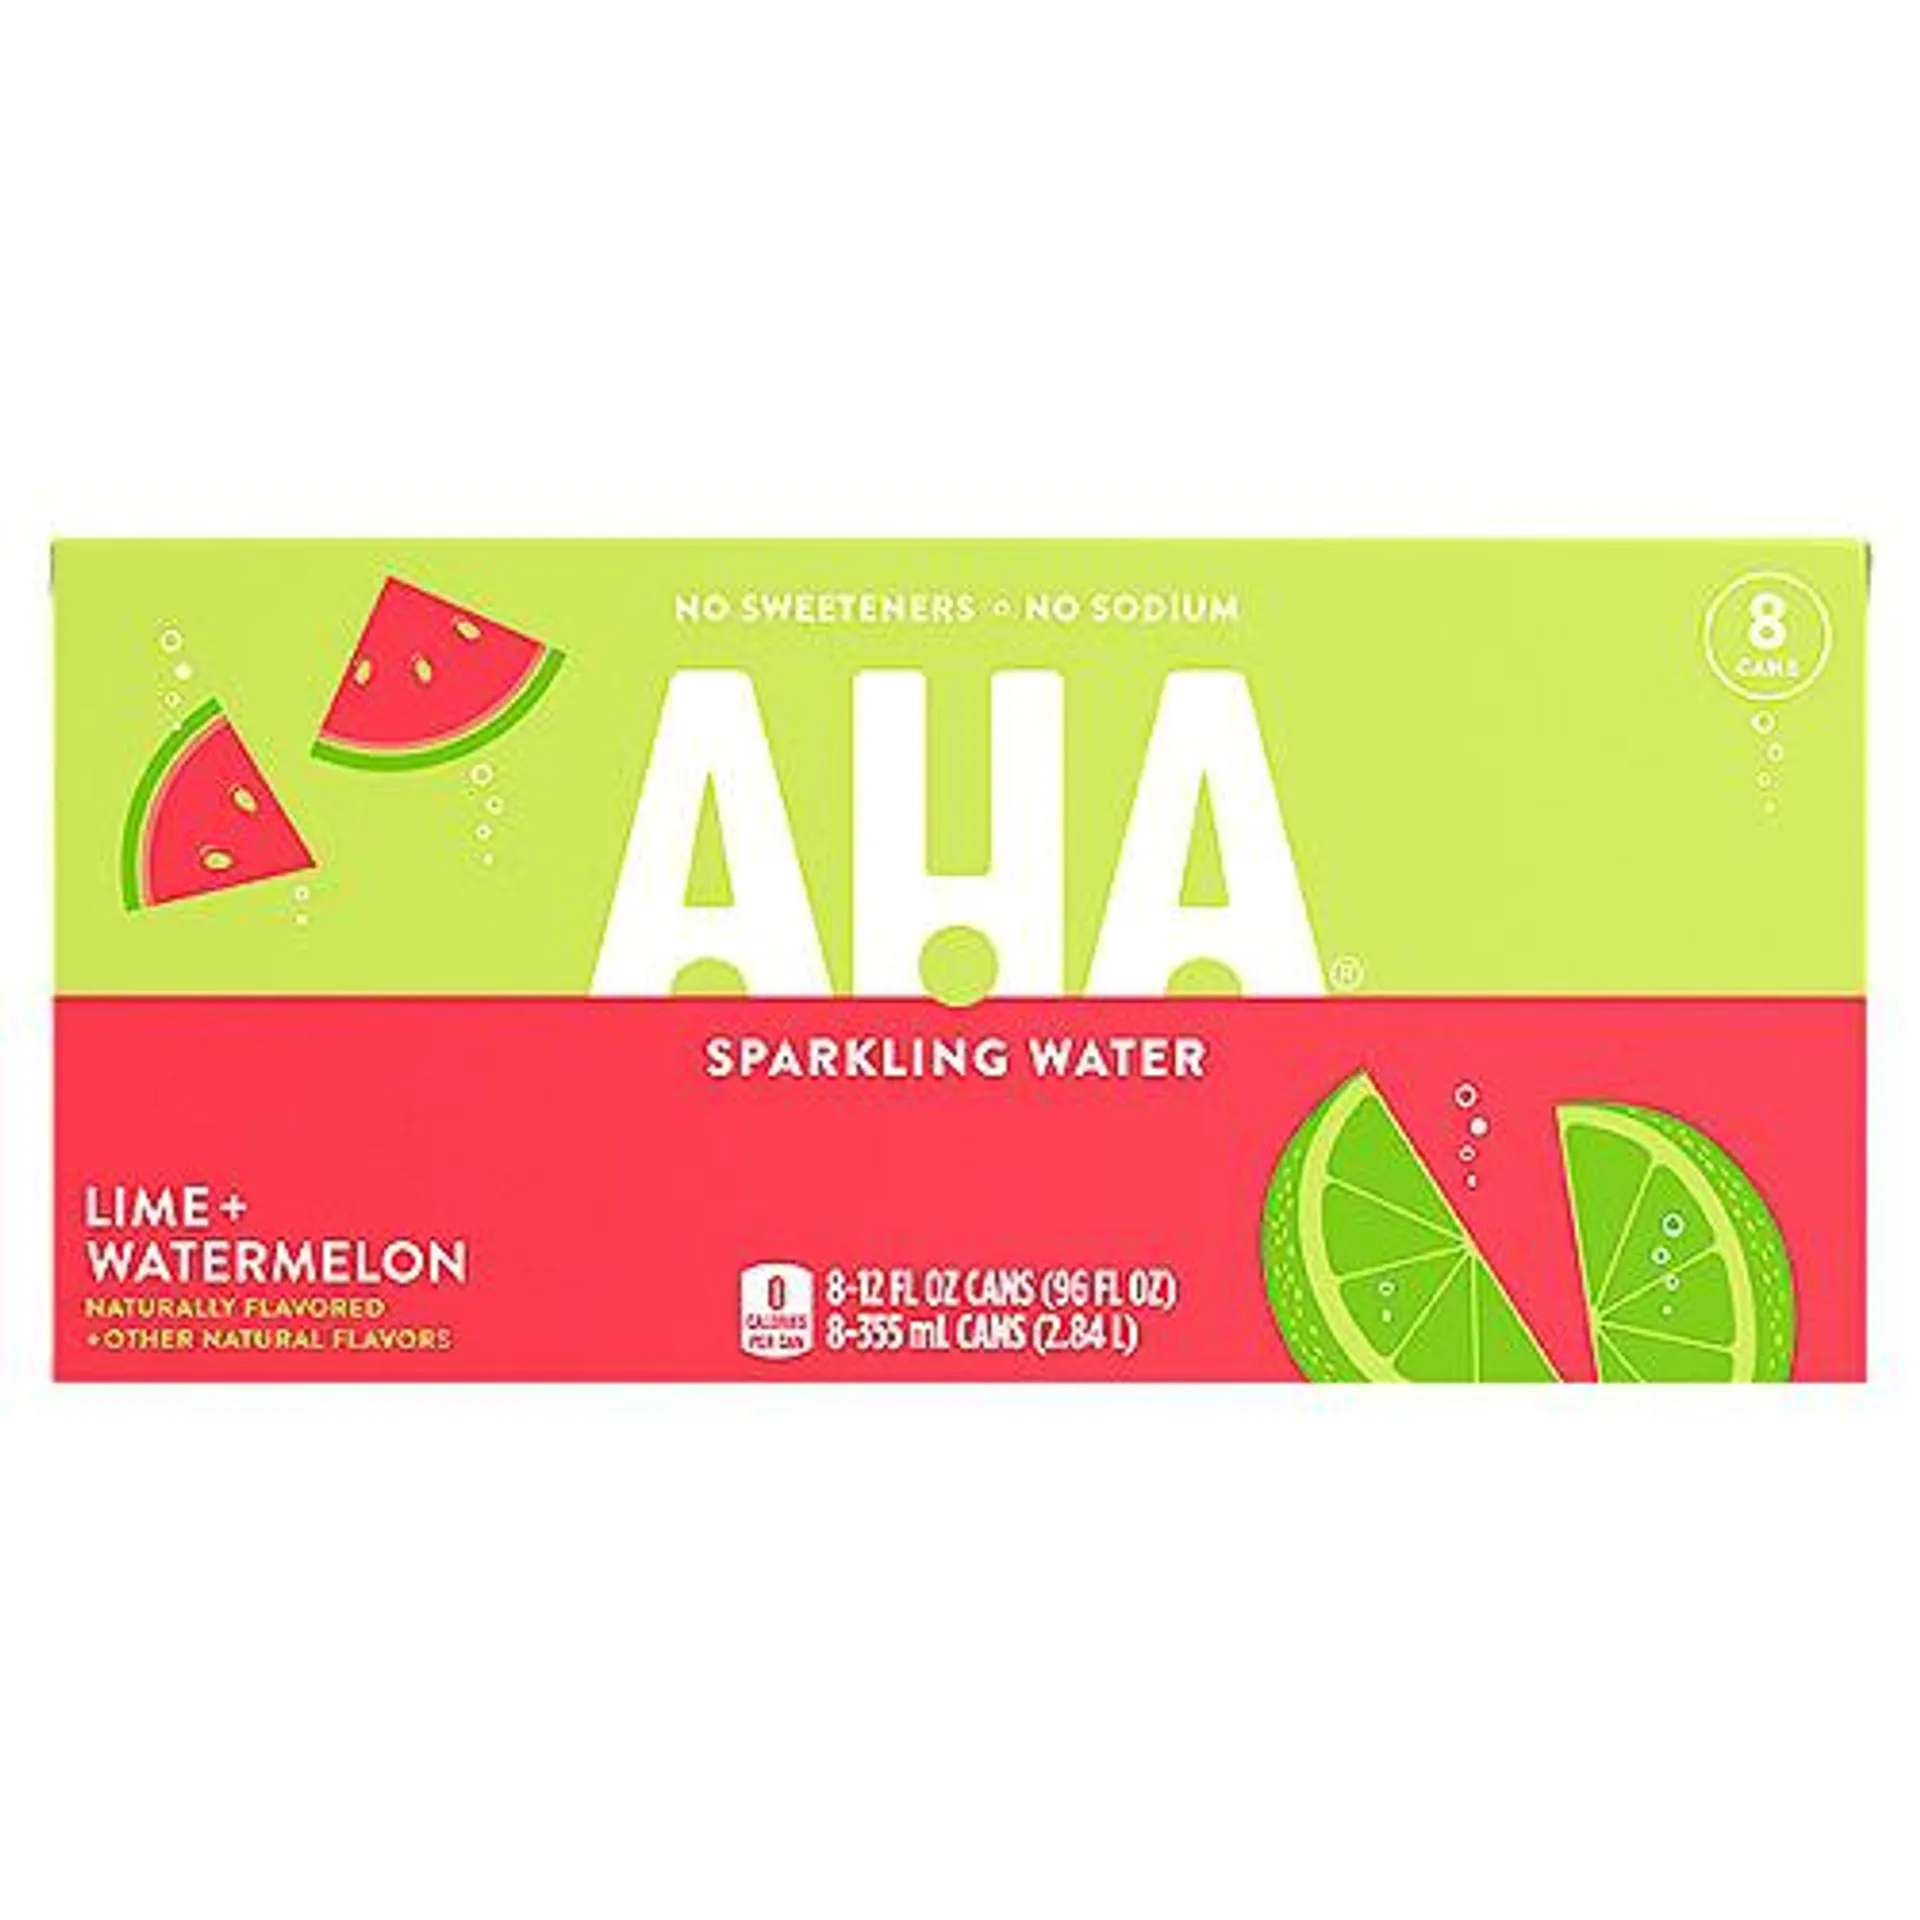 Aha Lime Watermelon Cans, 12 fl oz, 8 Pack